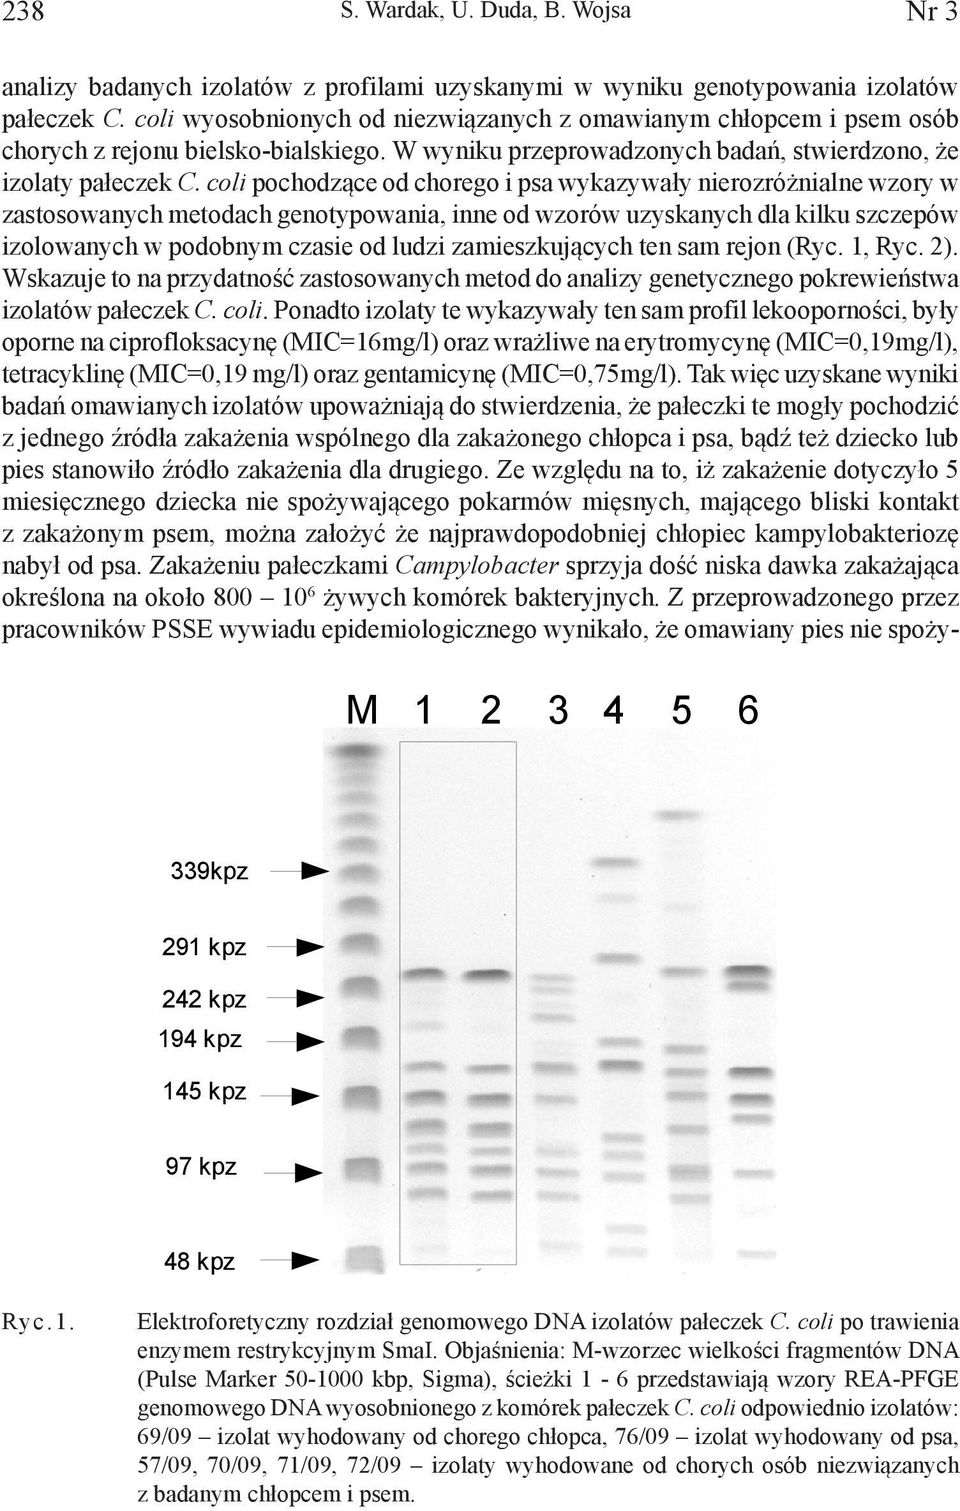 coli pochodzące od chorego i psa wykazywały nierozróżnialne wzory w zastosowanych metodach genotypowania, inne od wzorów uzyskanych dla kilku szczepów izolowanych w podobnym czasie od ludzi